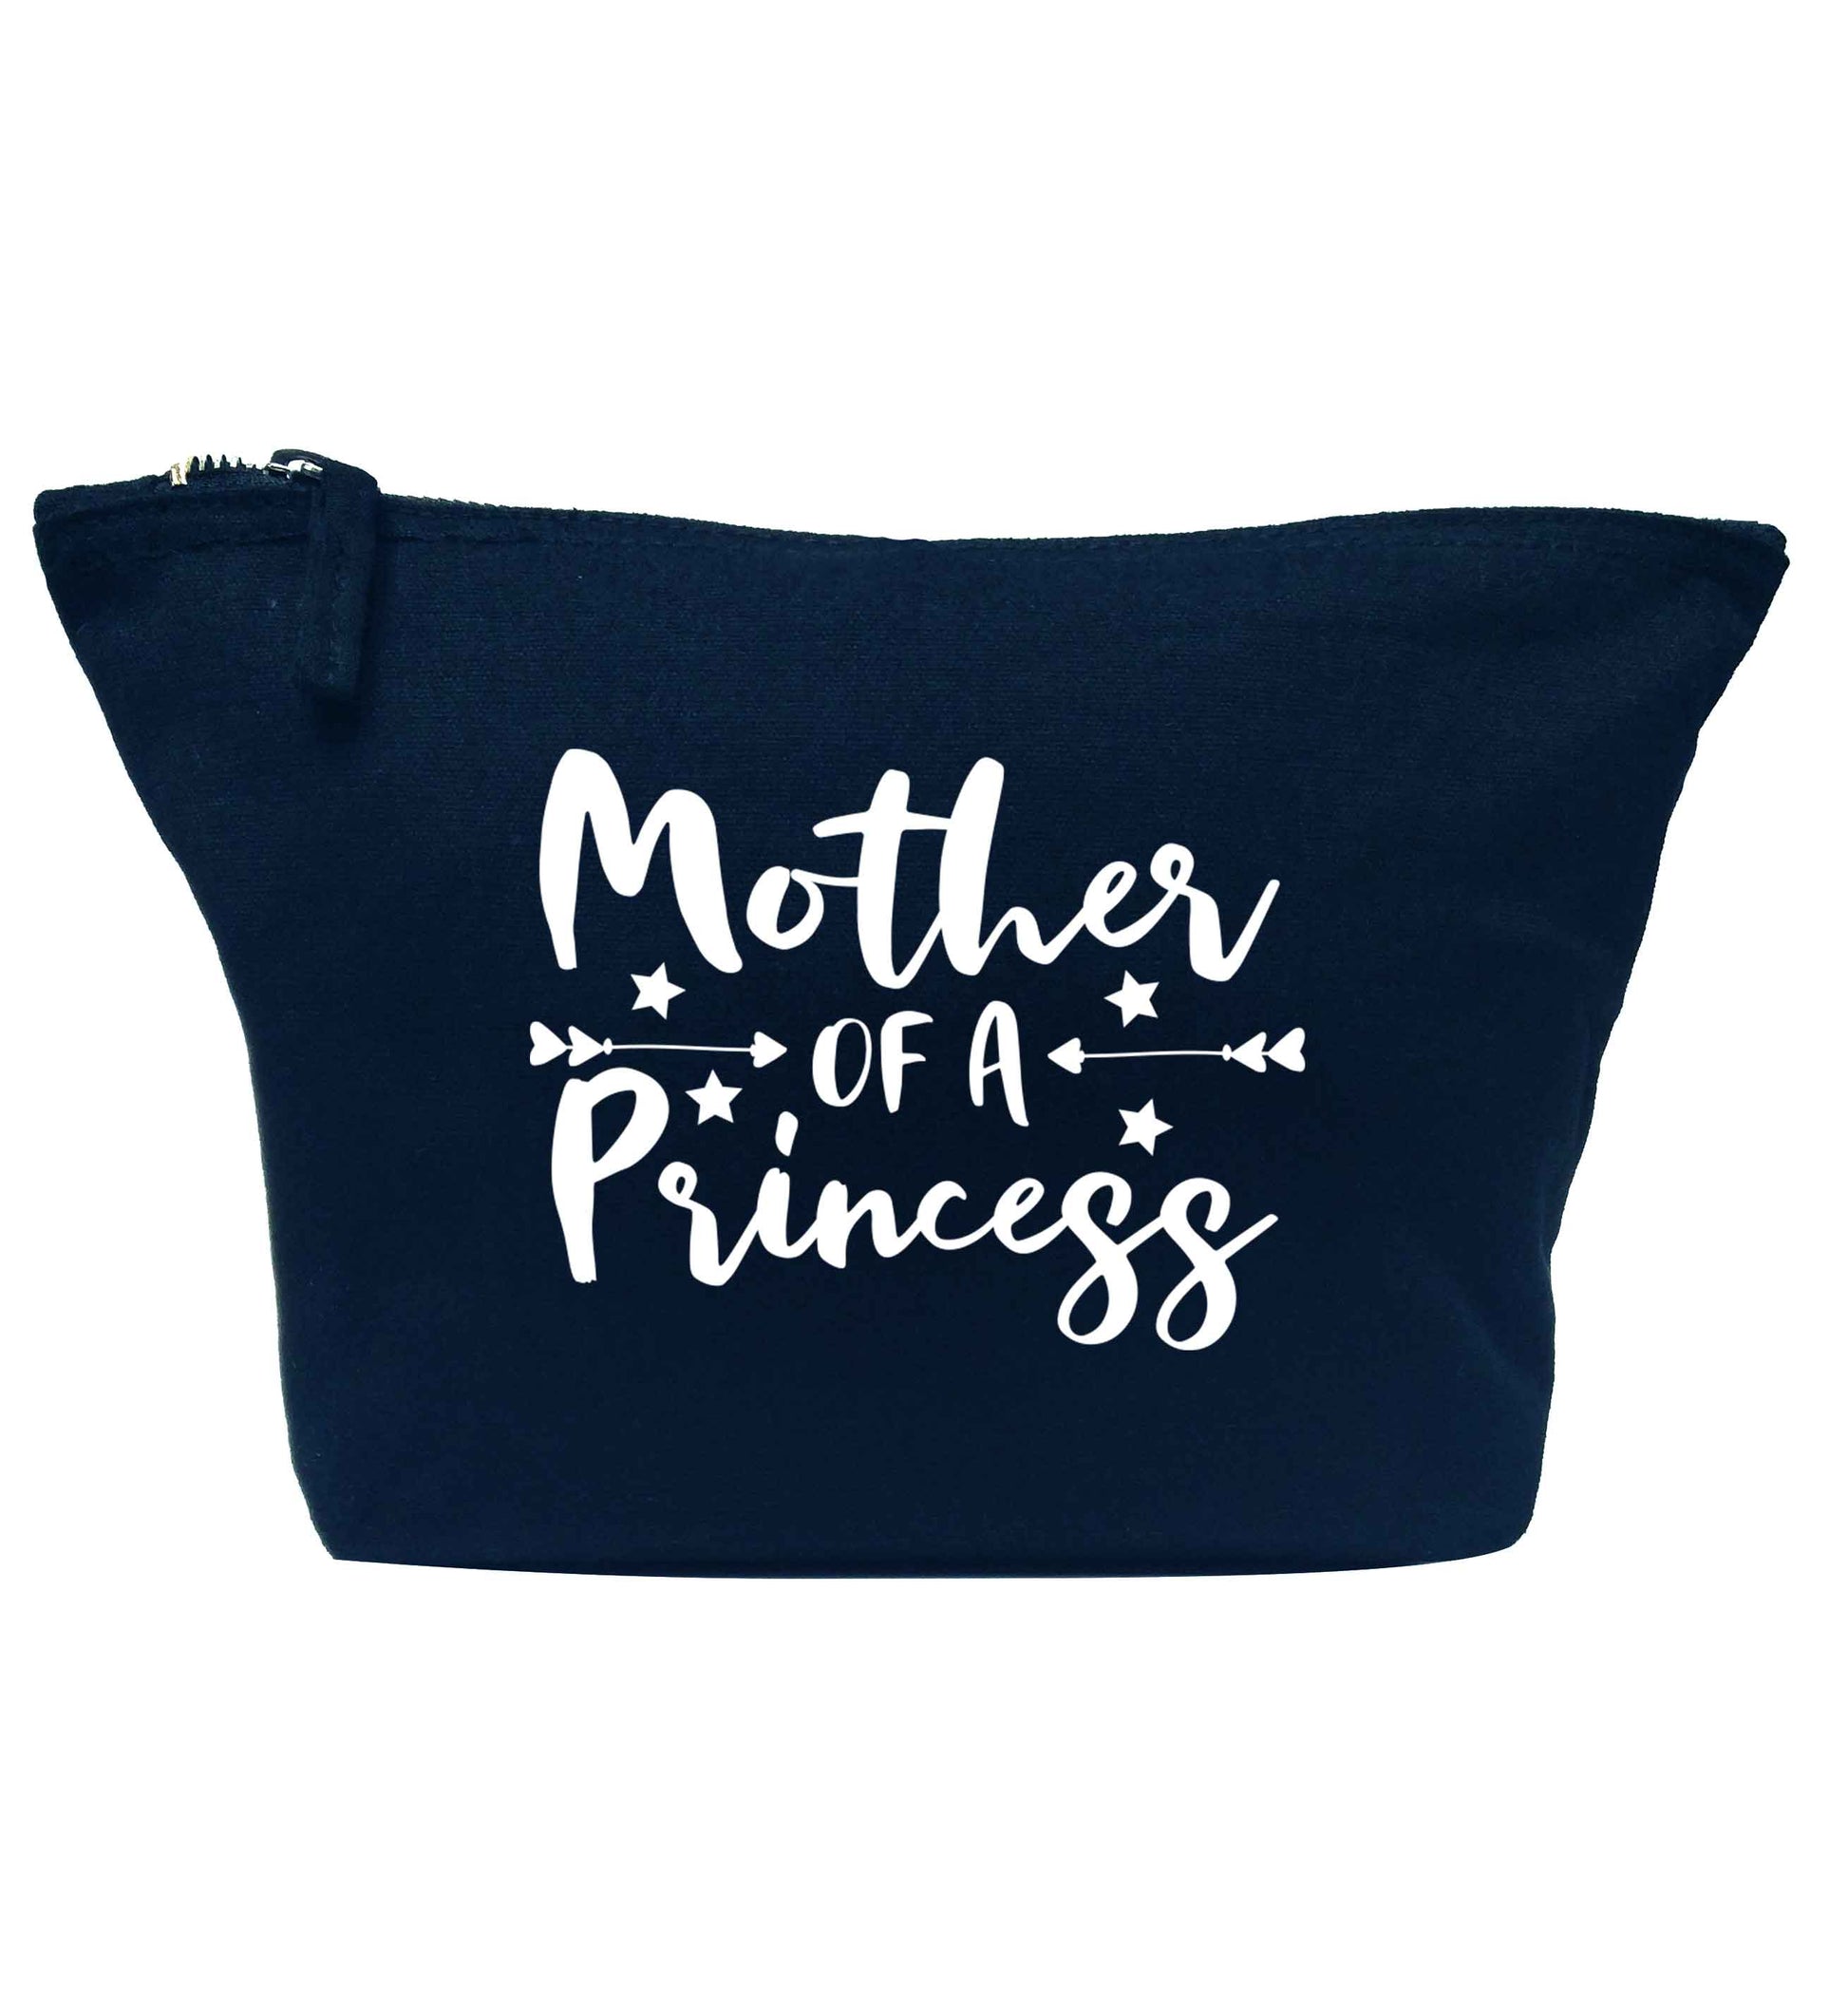 Mother of a princess navy makeup bag